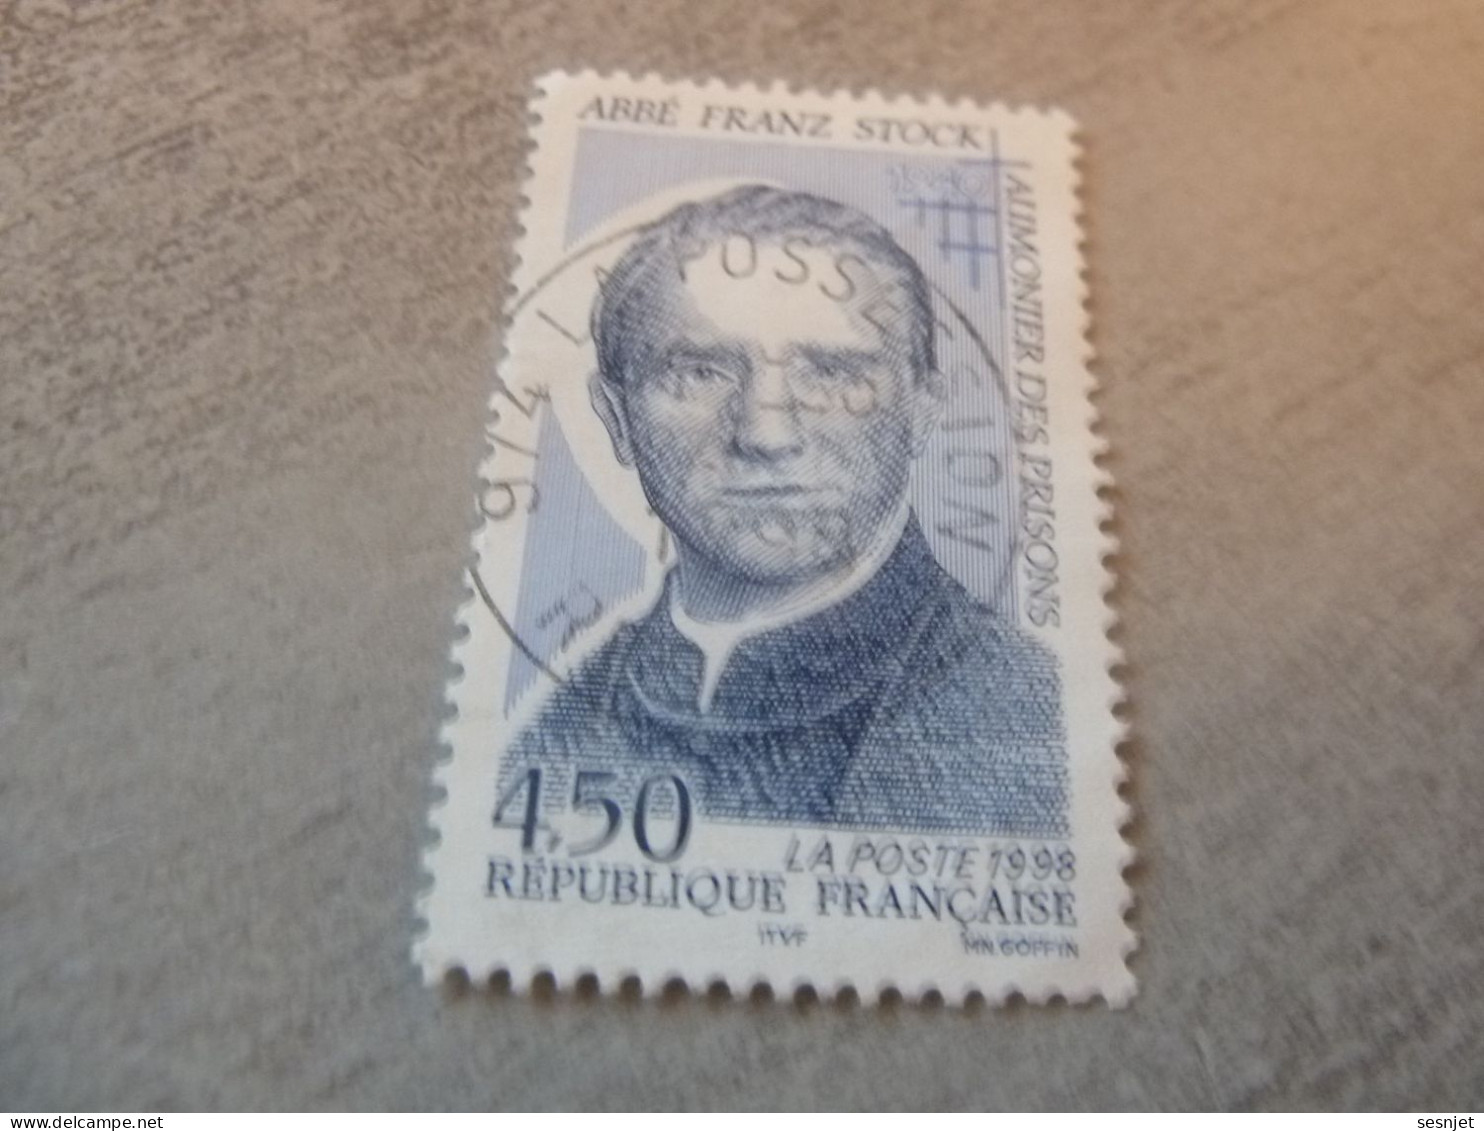 Abbé Franz Stock (1904-1948) Aumonier - 4f.50 - Yt 3138 - Bleu - Oblitéré - Année 1998 - - Gebraucht